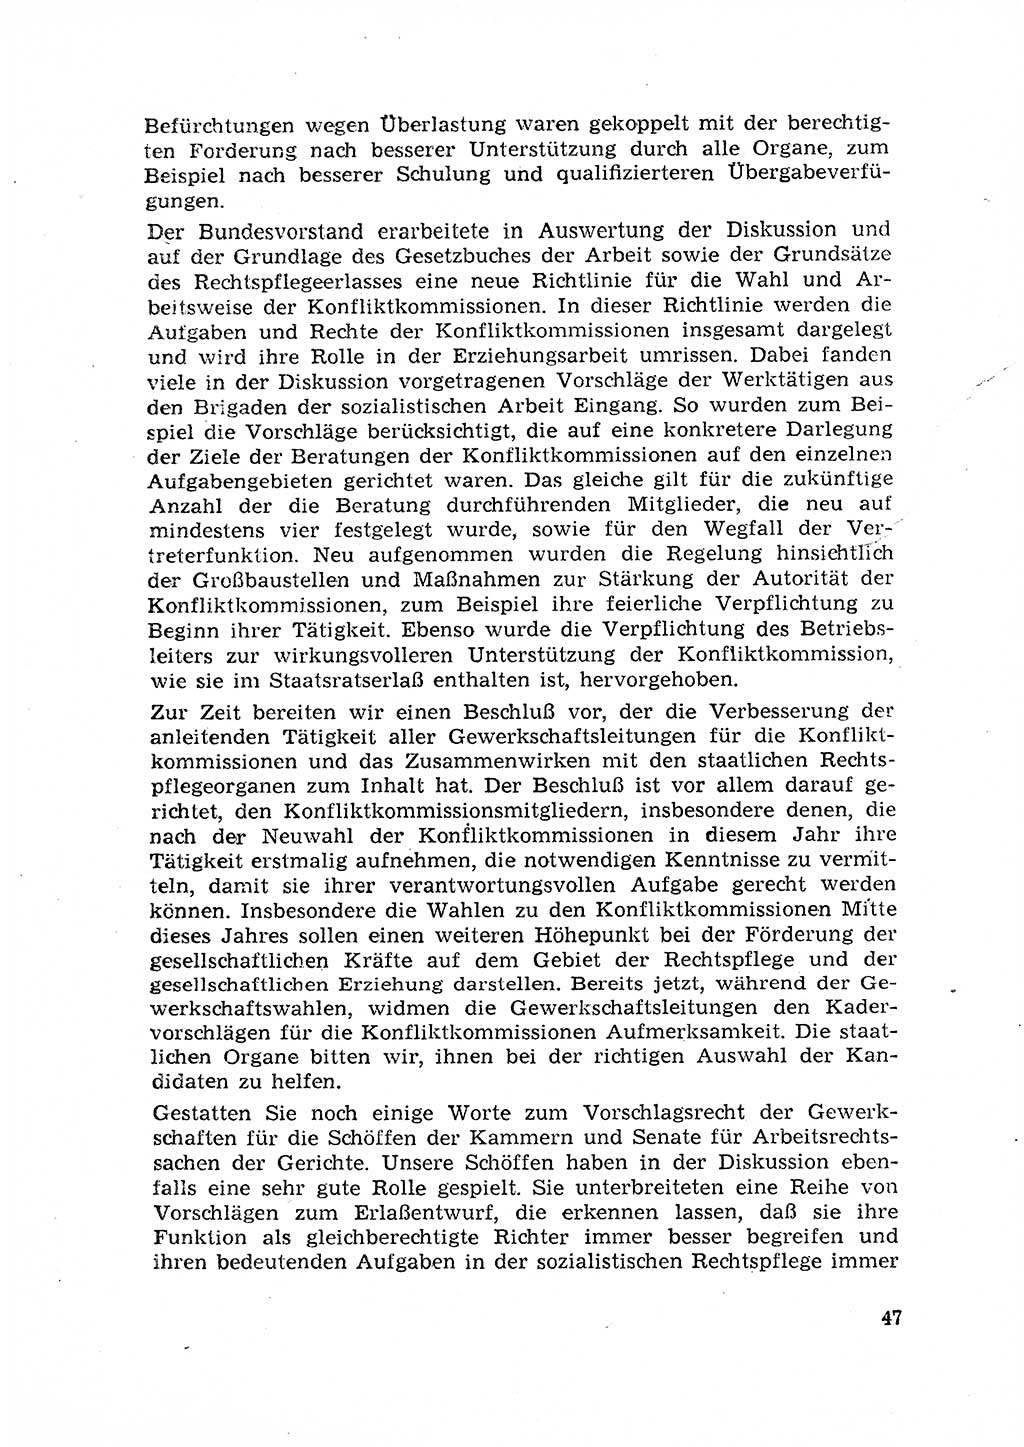 Rechtspflegeerlaß [Deutsche Demokratische Republik (DDR)] 1963, Seite 47 (R.-Pfl.-Erl. DDR 1963, S. 47)